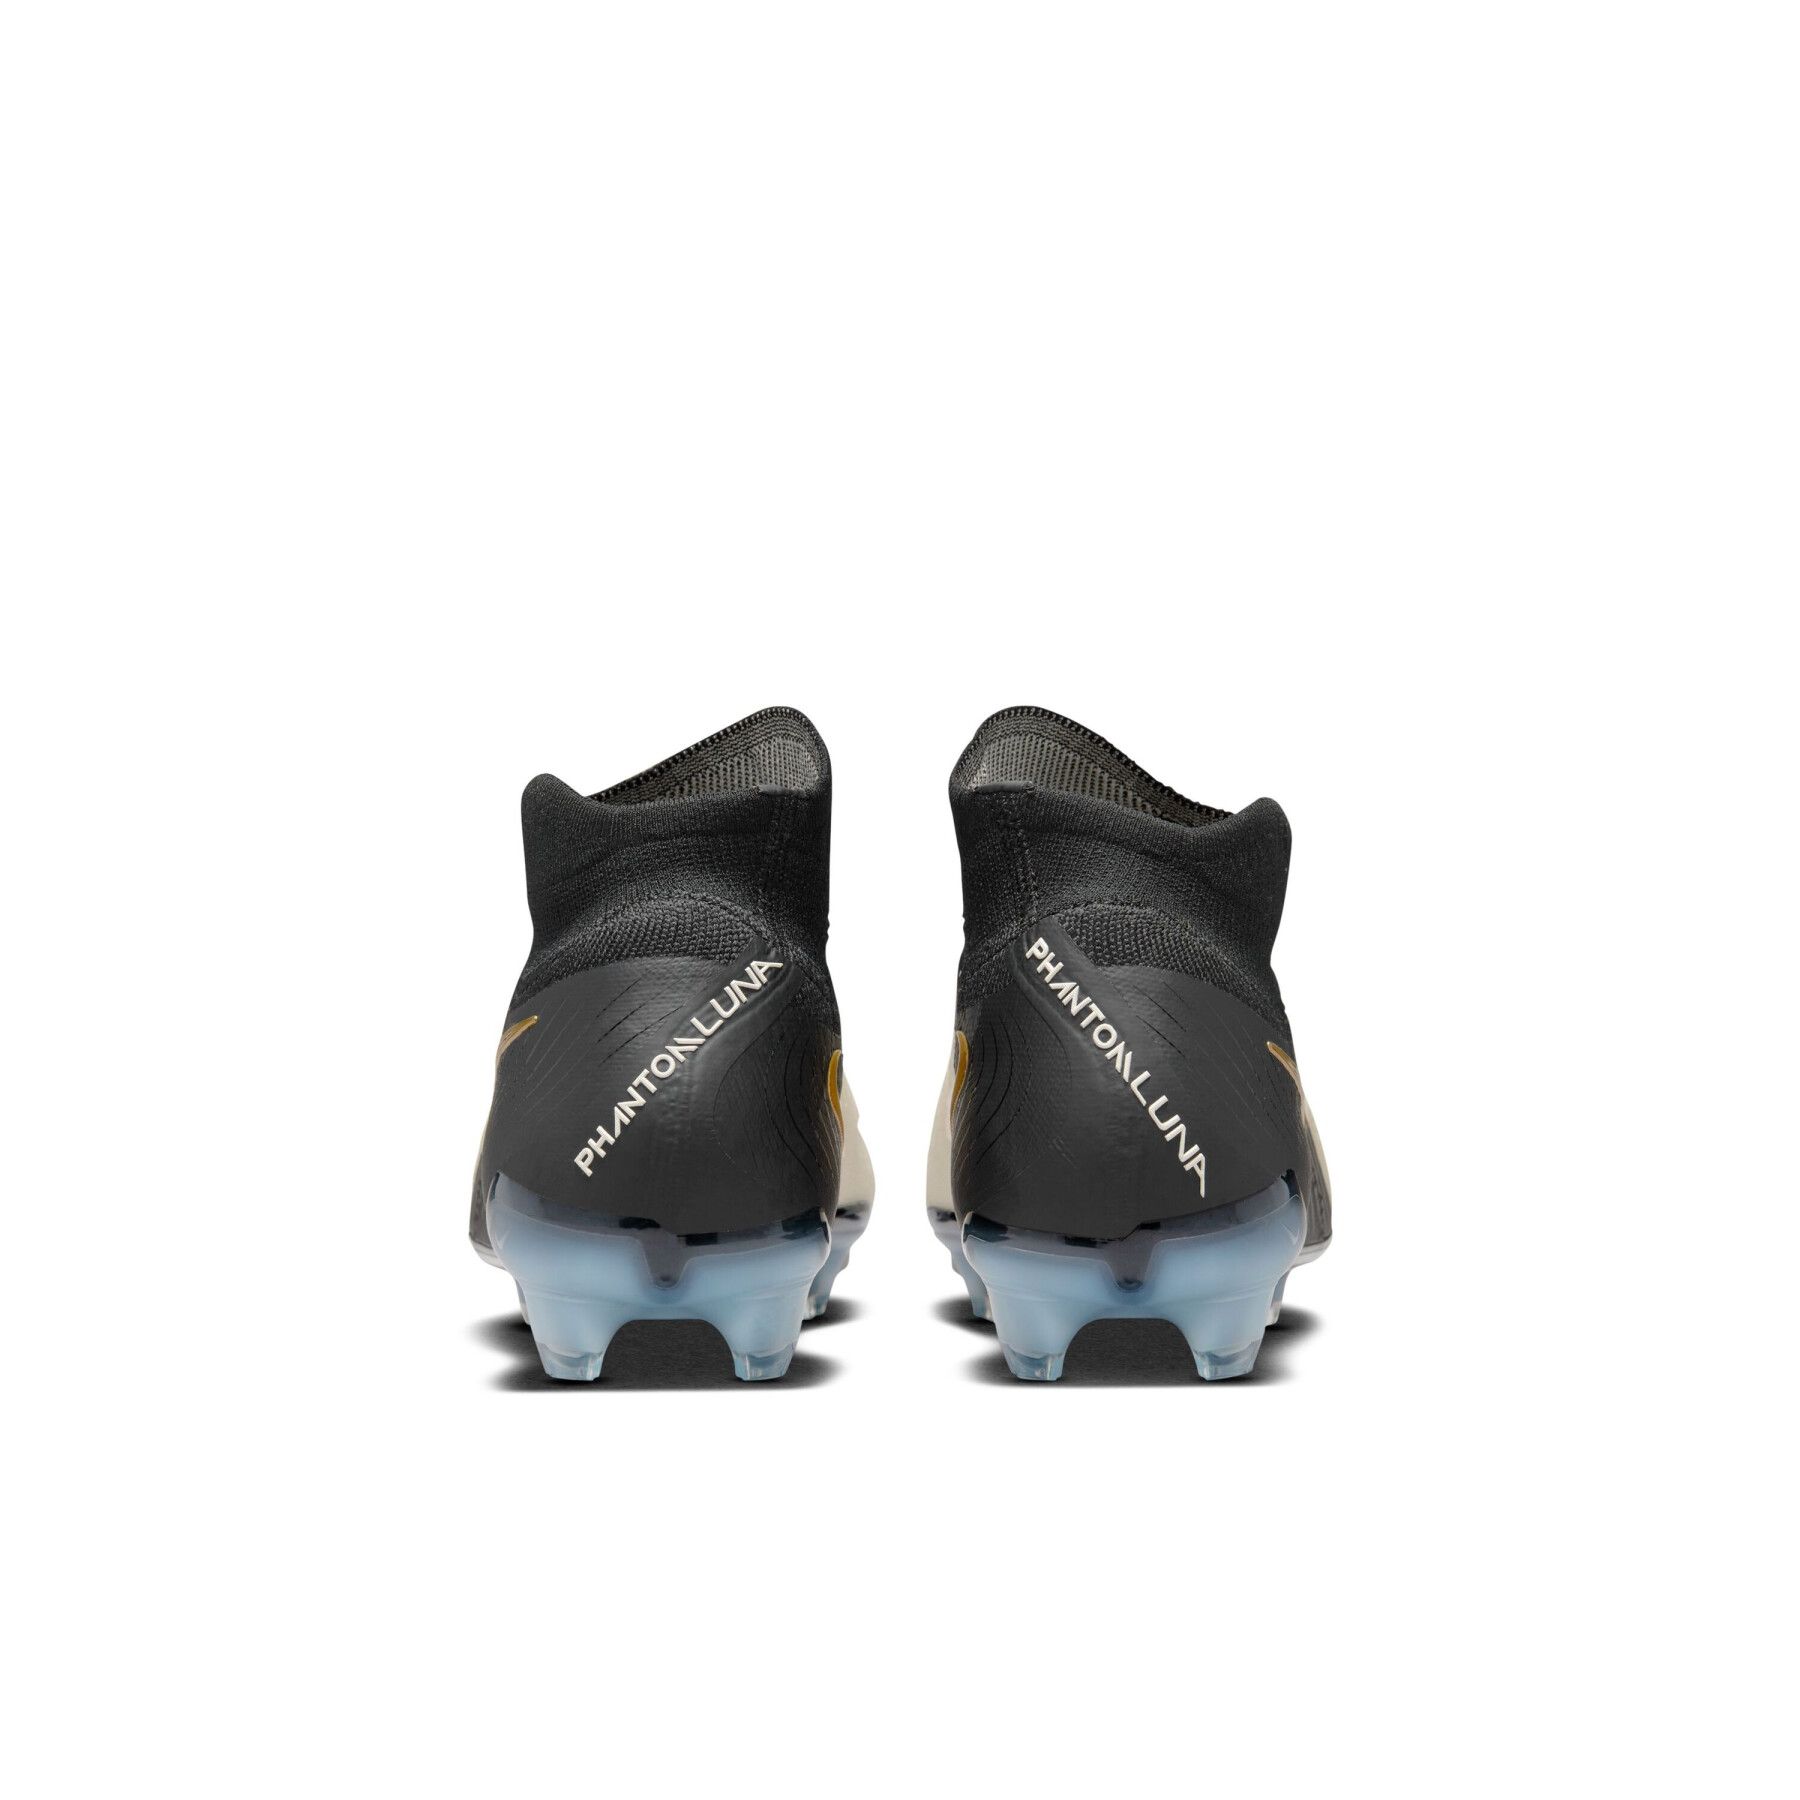 Children's soccer shoes Nike Phantom Luna 2 Elite FG